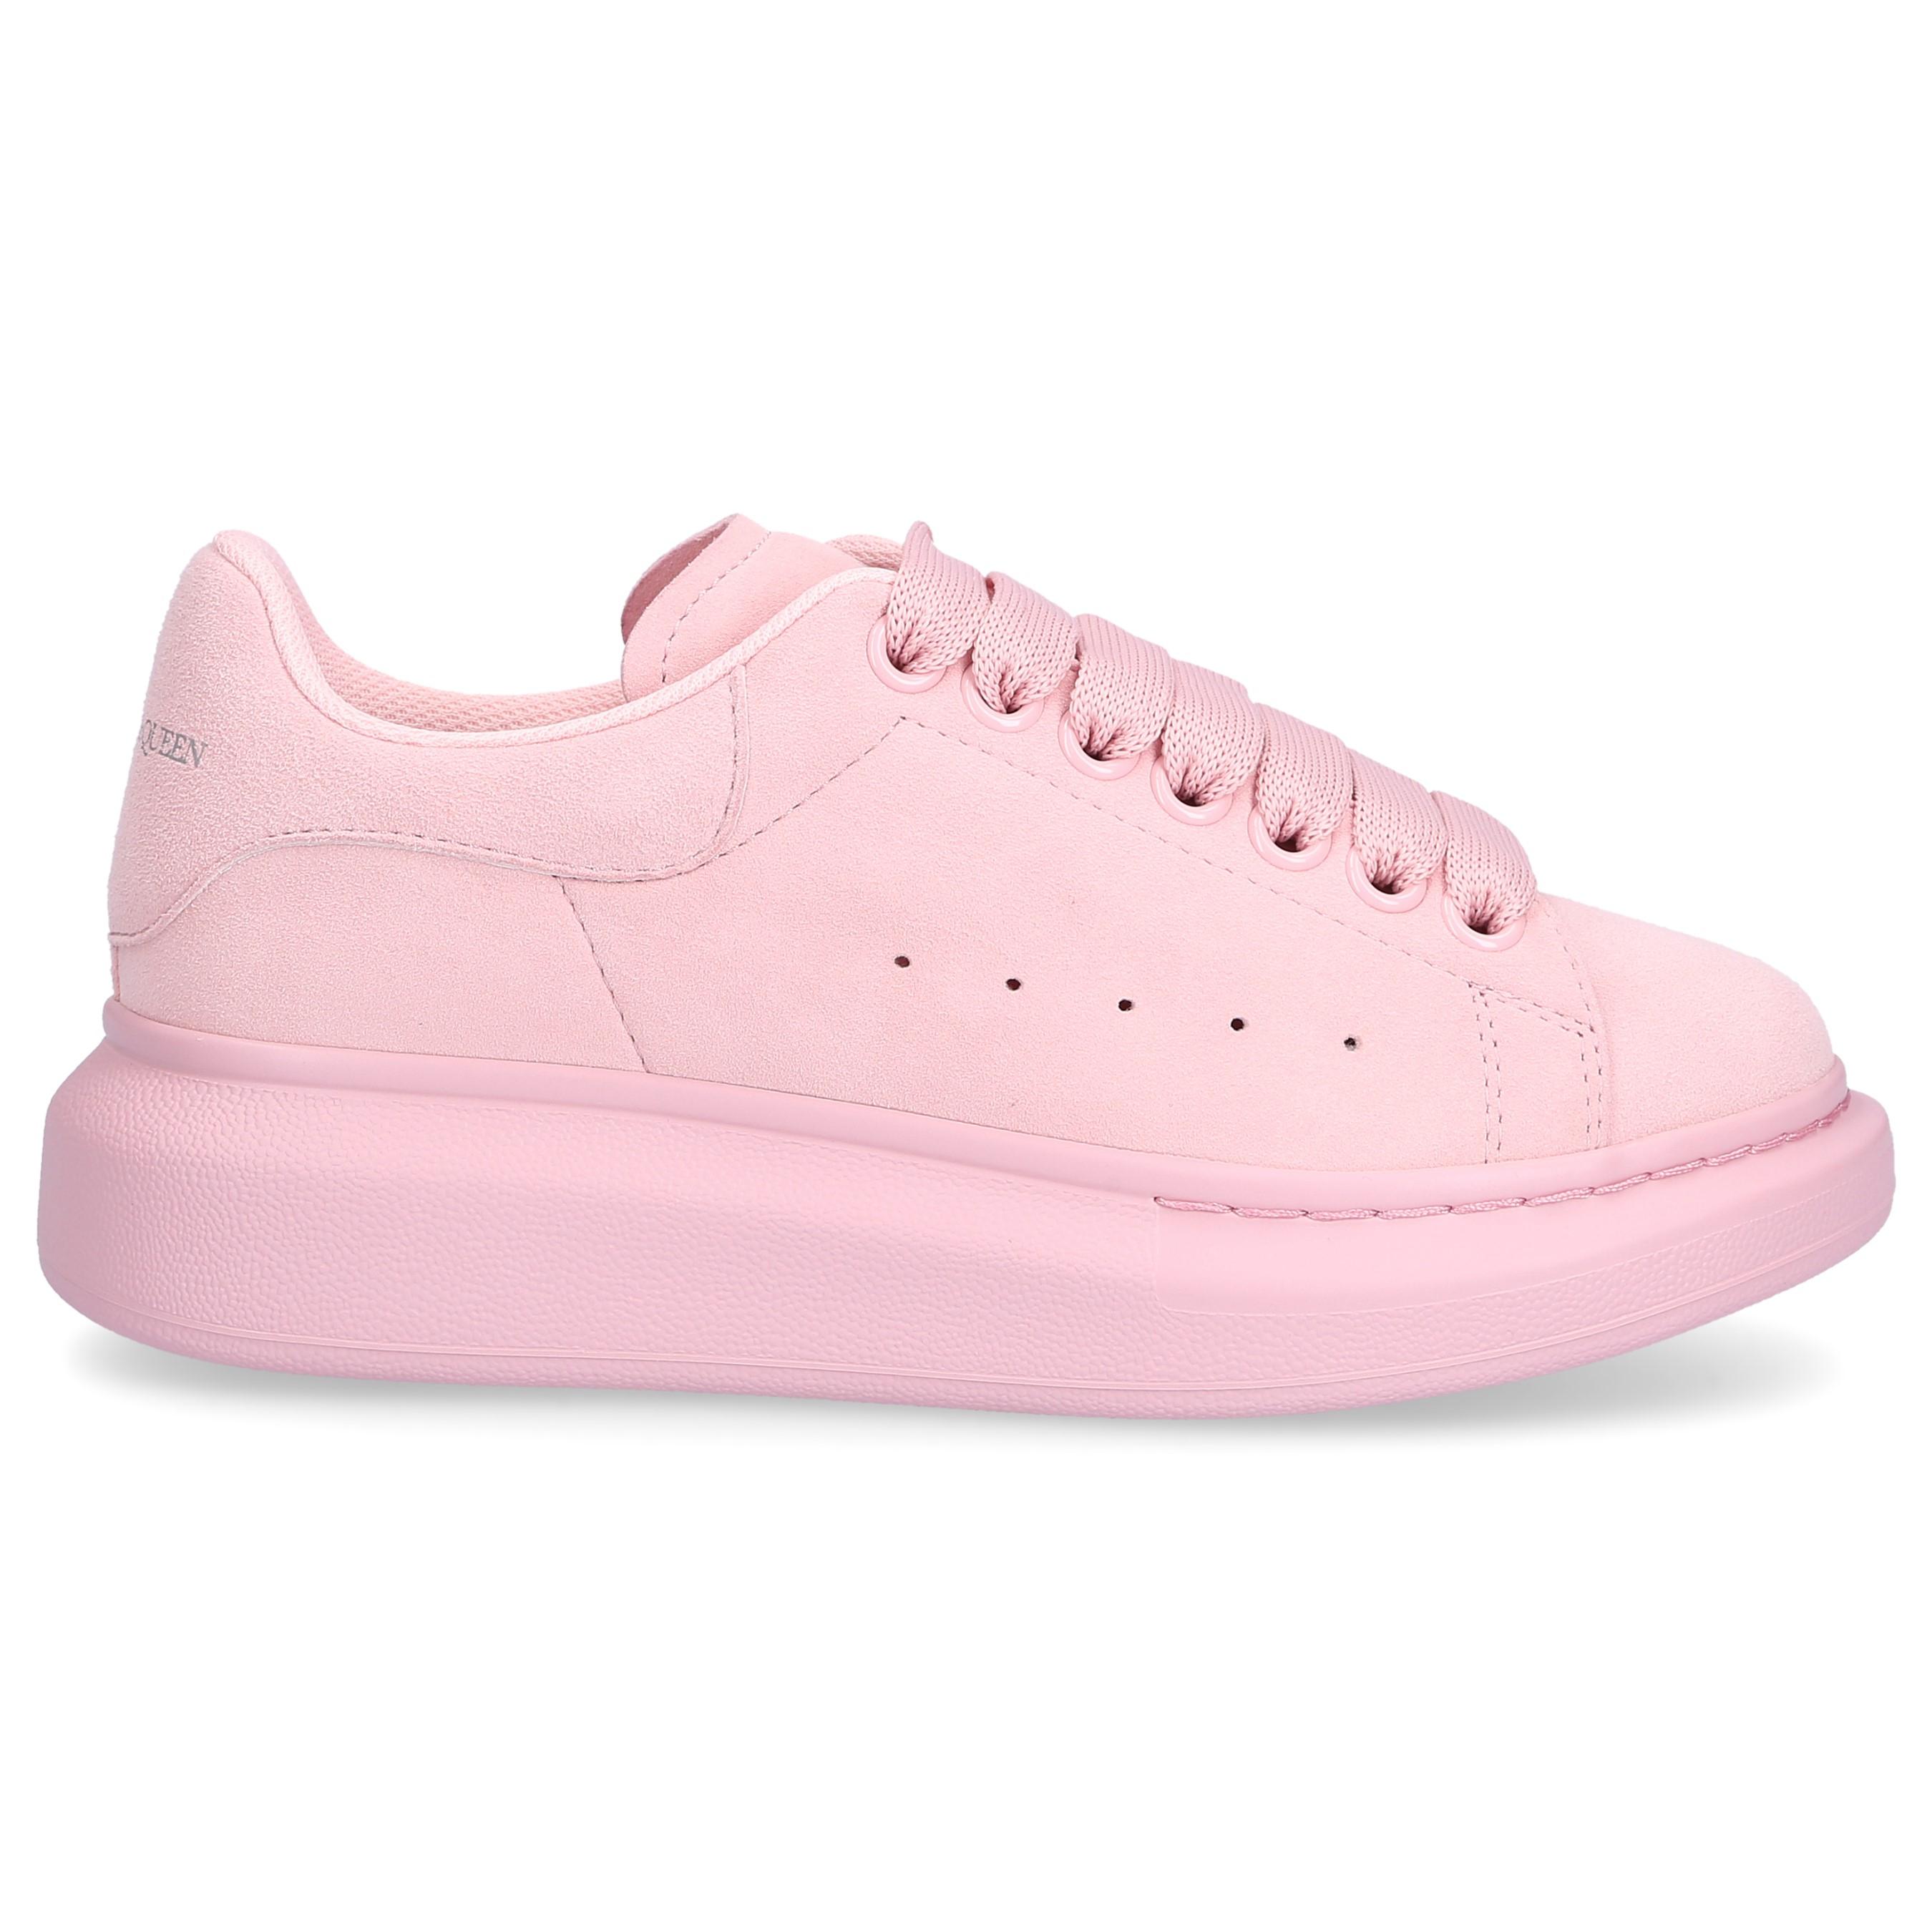 Alexander McQueen Suede Low-top Sneakers Larry in Pink - Lyst